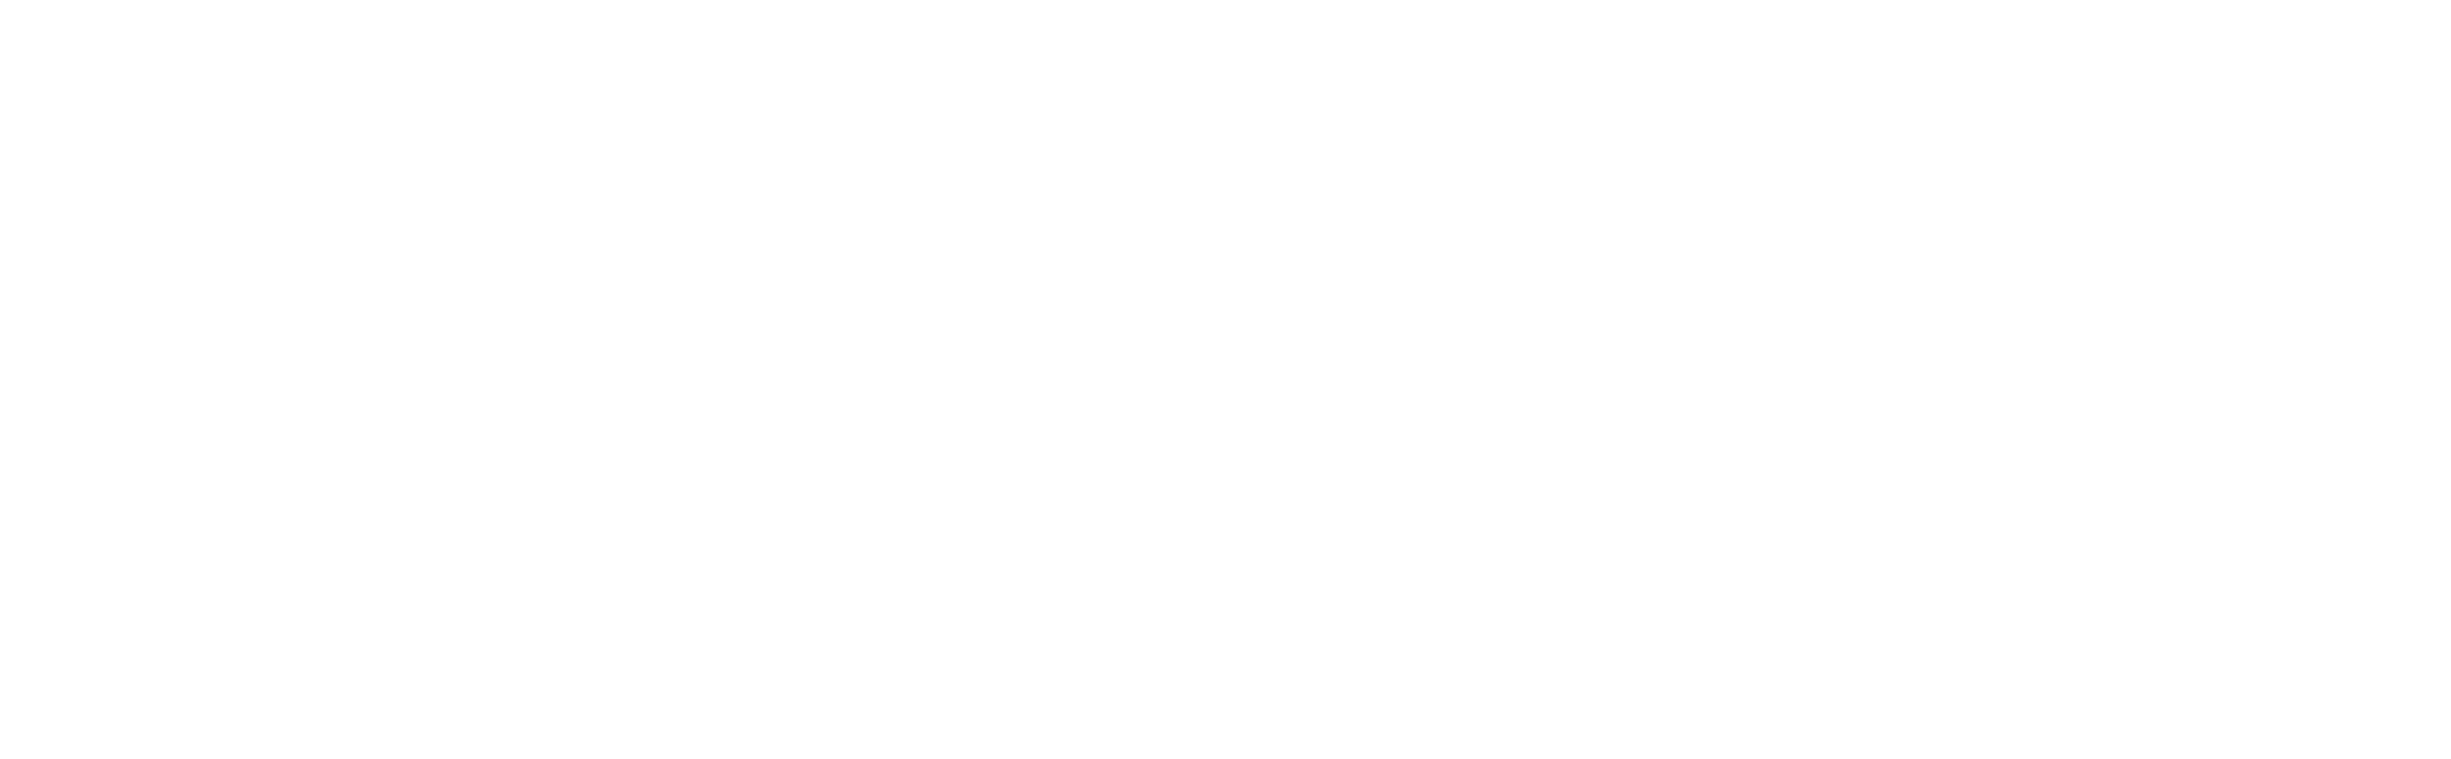 Beesy logo - rédiger un compte rendu de réunion